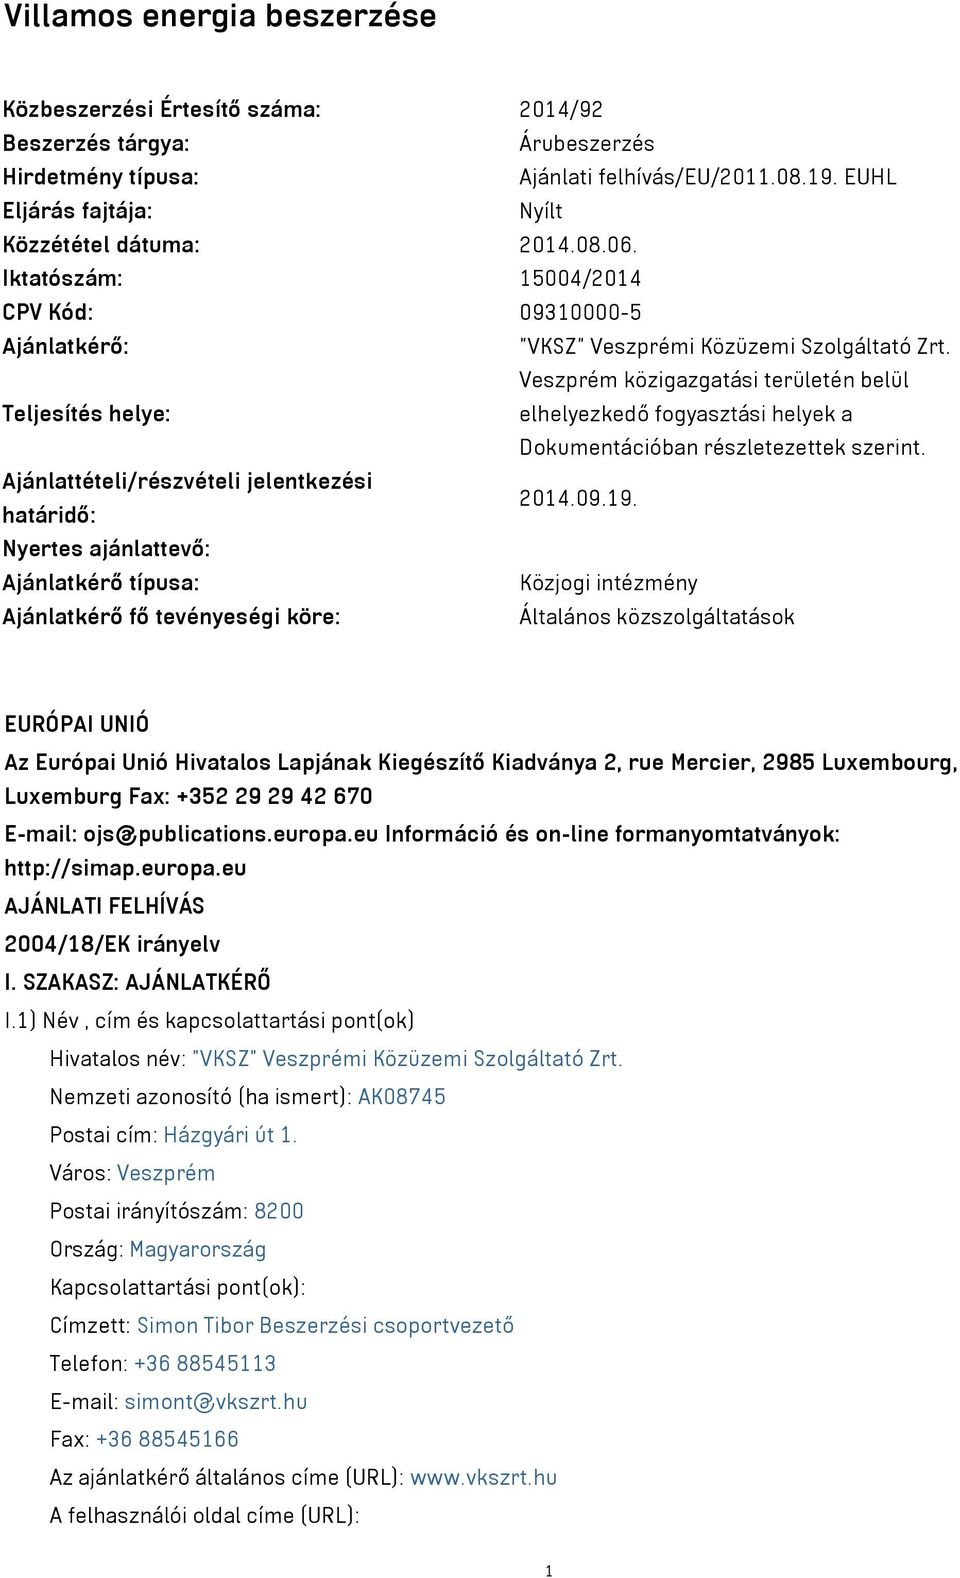 Veszprém közigazgatási területén belül Teljesítés helye: elhelyezkedő fogyasztási helyek a Dokumentációban részletezettek szerint. Ajánlattételi/részvételi jelentkezési határidő: 2014.09.19.